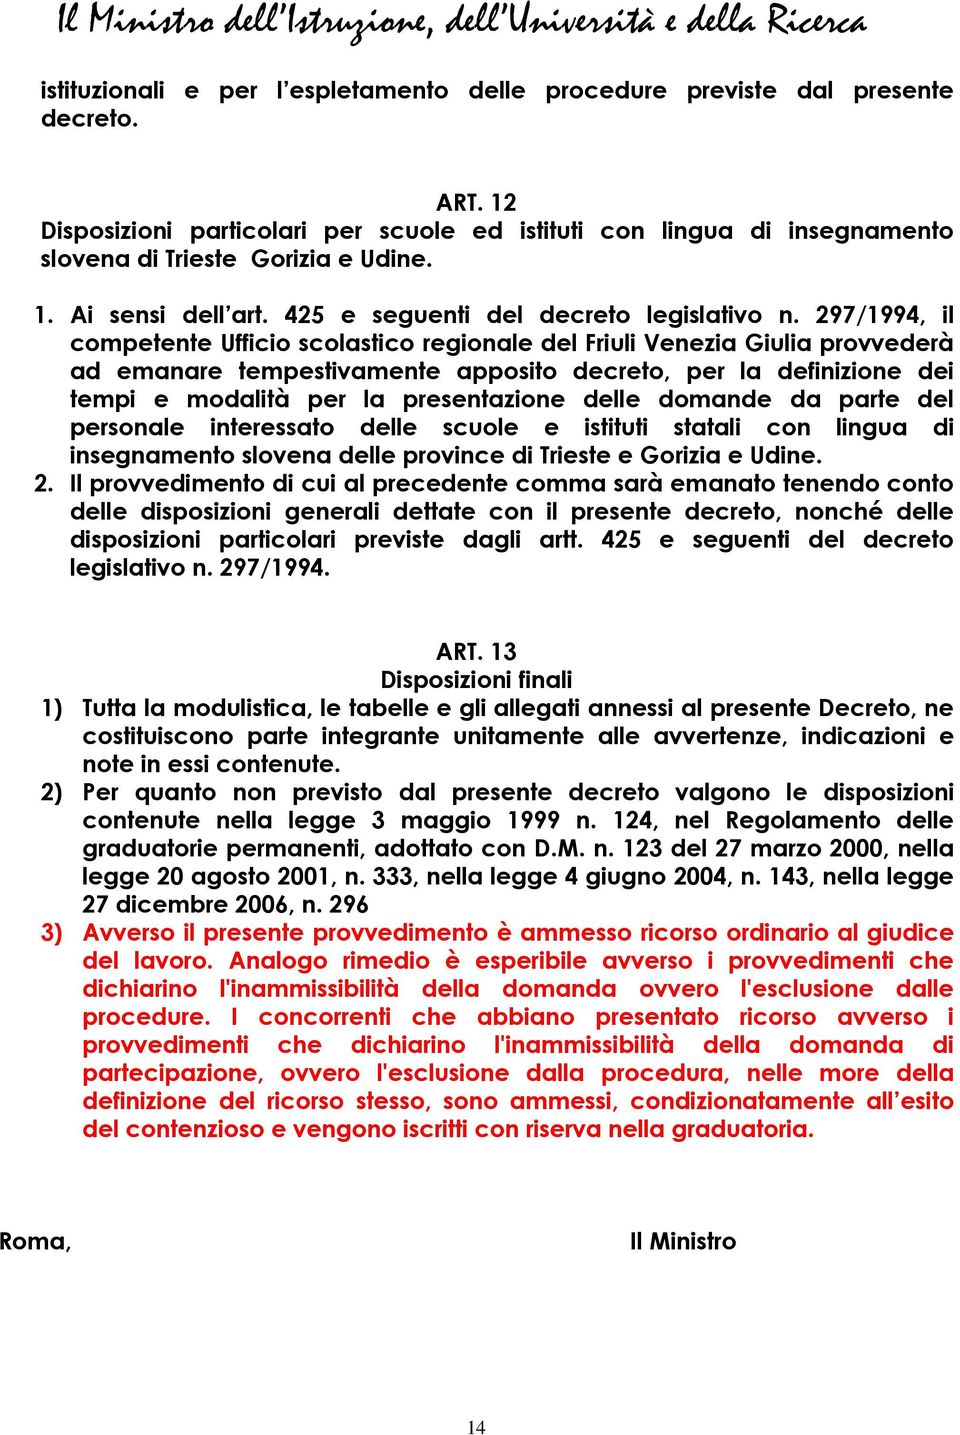 297/1994, il competente Ufficio scolastico regionale del Friuli Venezia Giulia provvederà ad emanare tempestivamente apposito decreto, per la definizione dei tempi e modalità per la presentazione